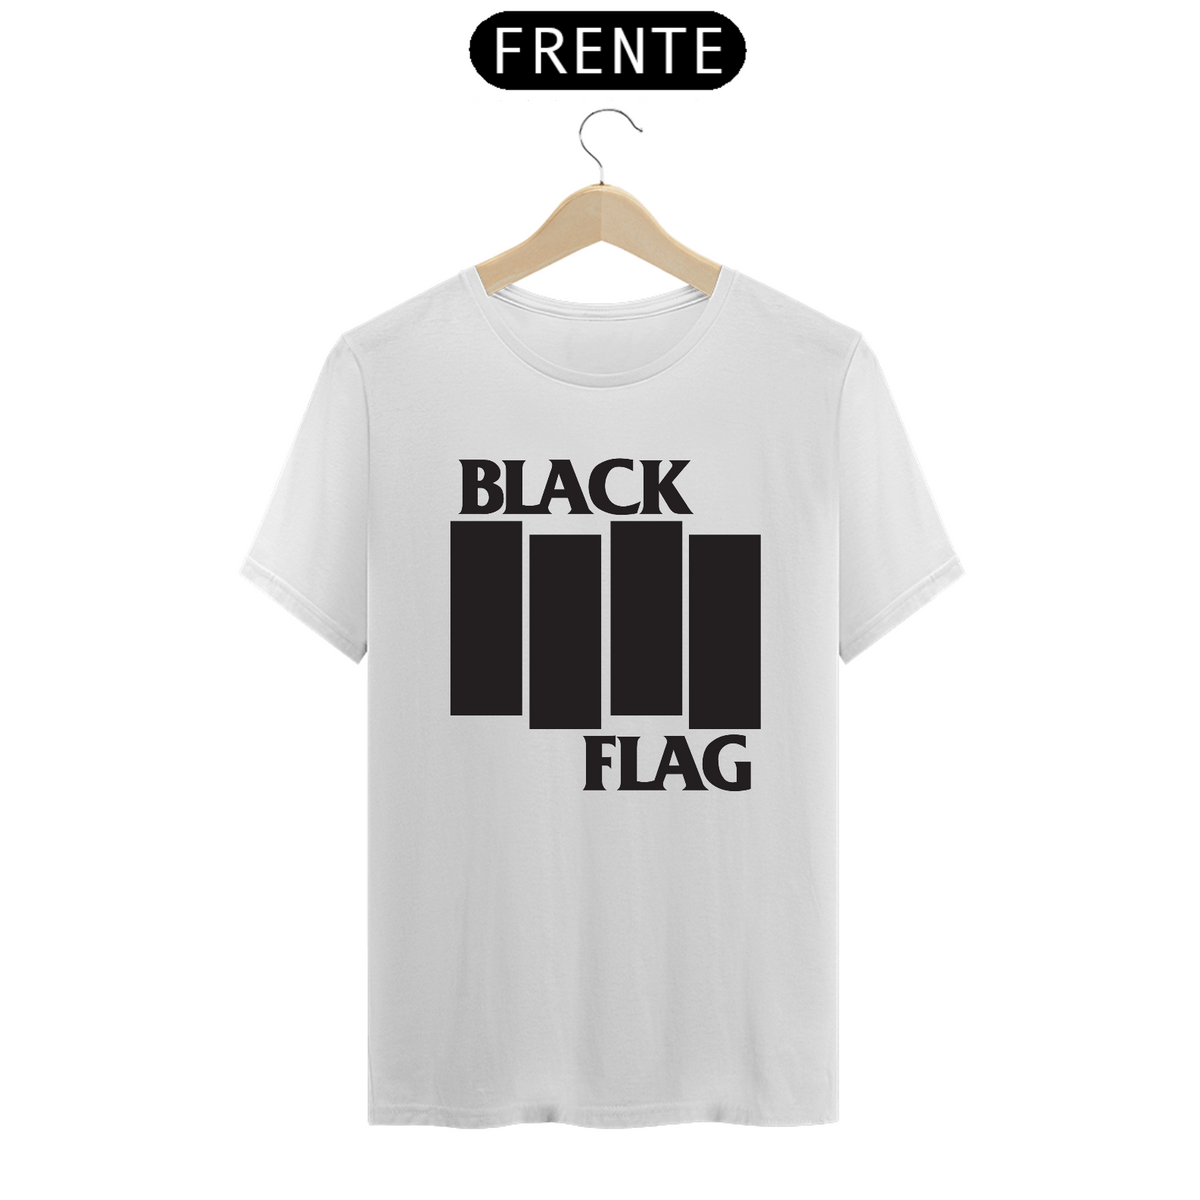 Nome do produto: Black Flag